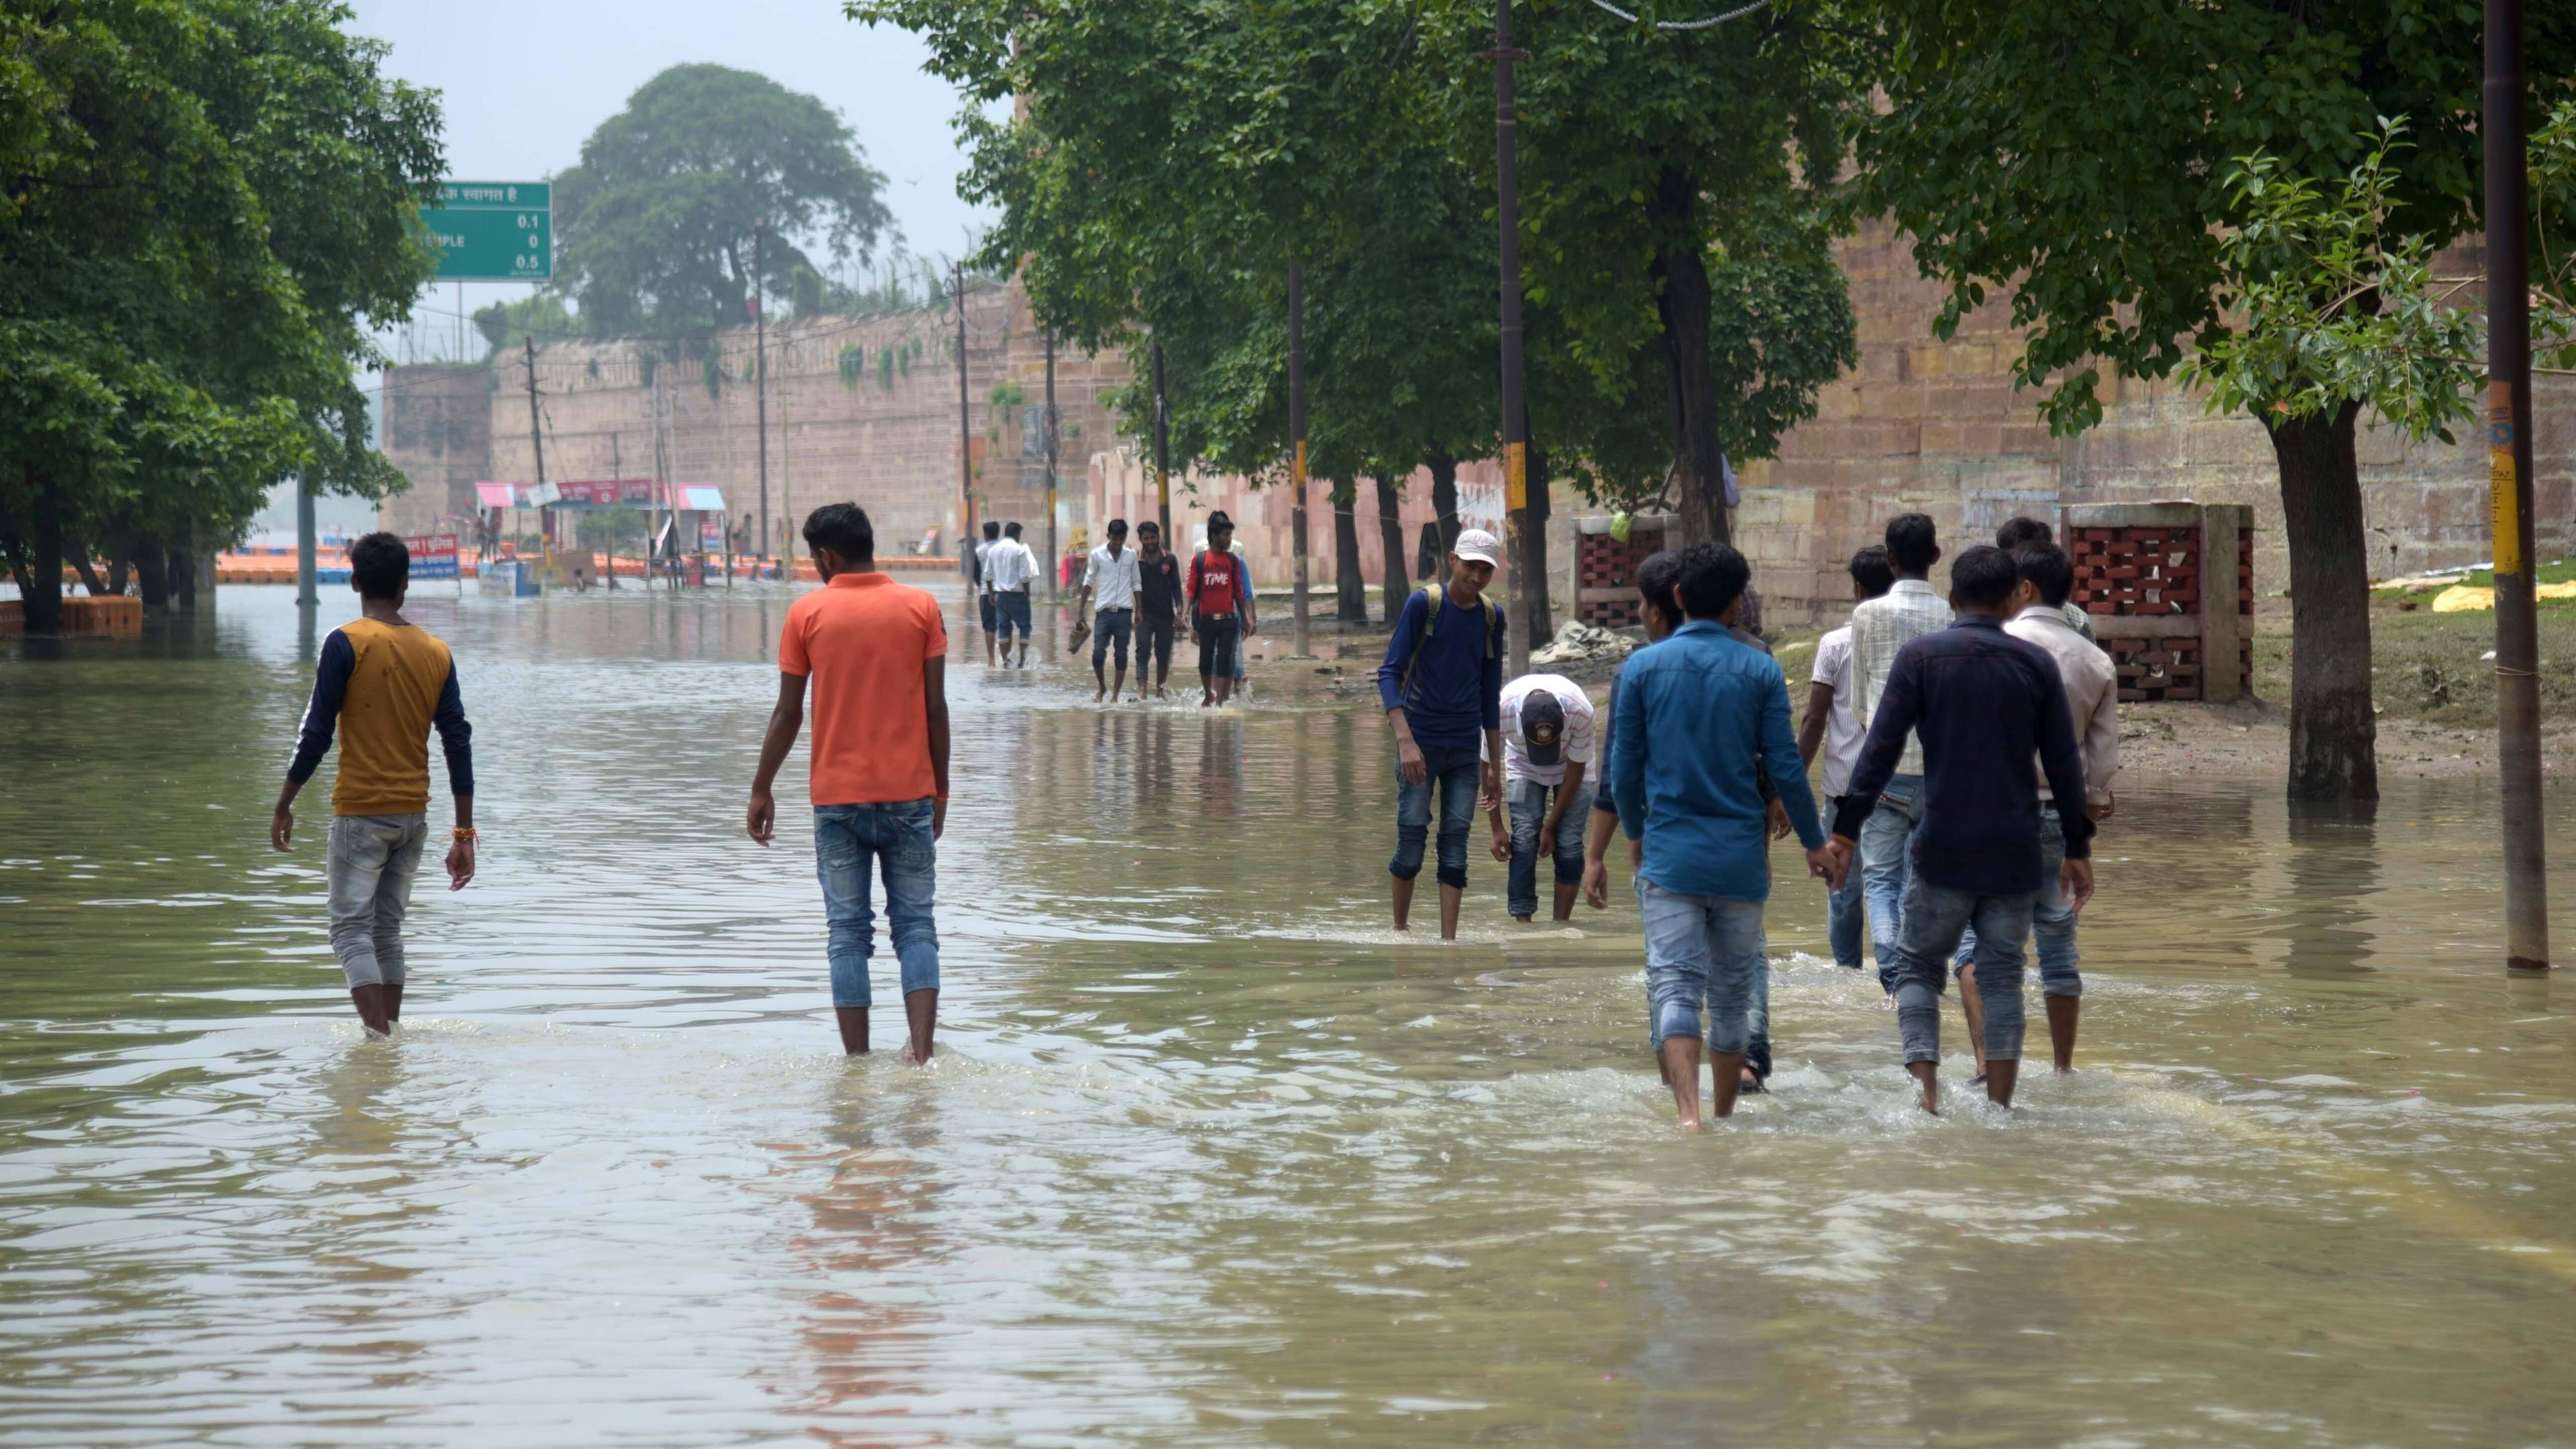 Überflutete Straße in Indien nach Monsun